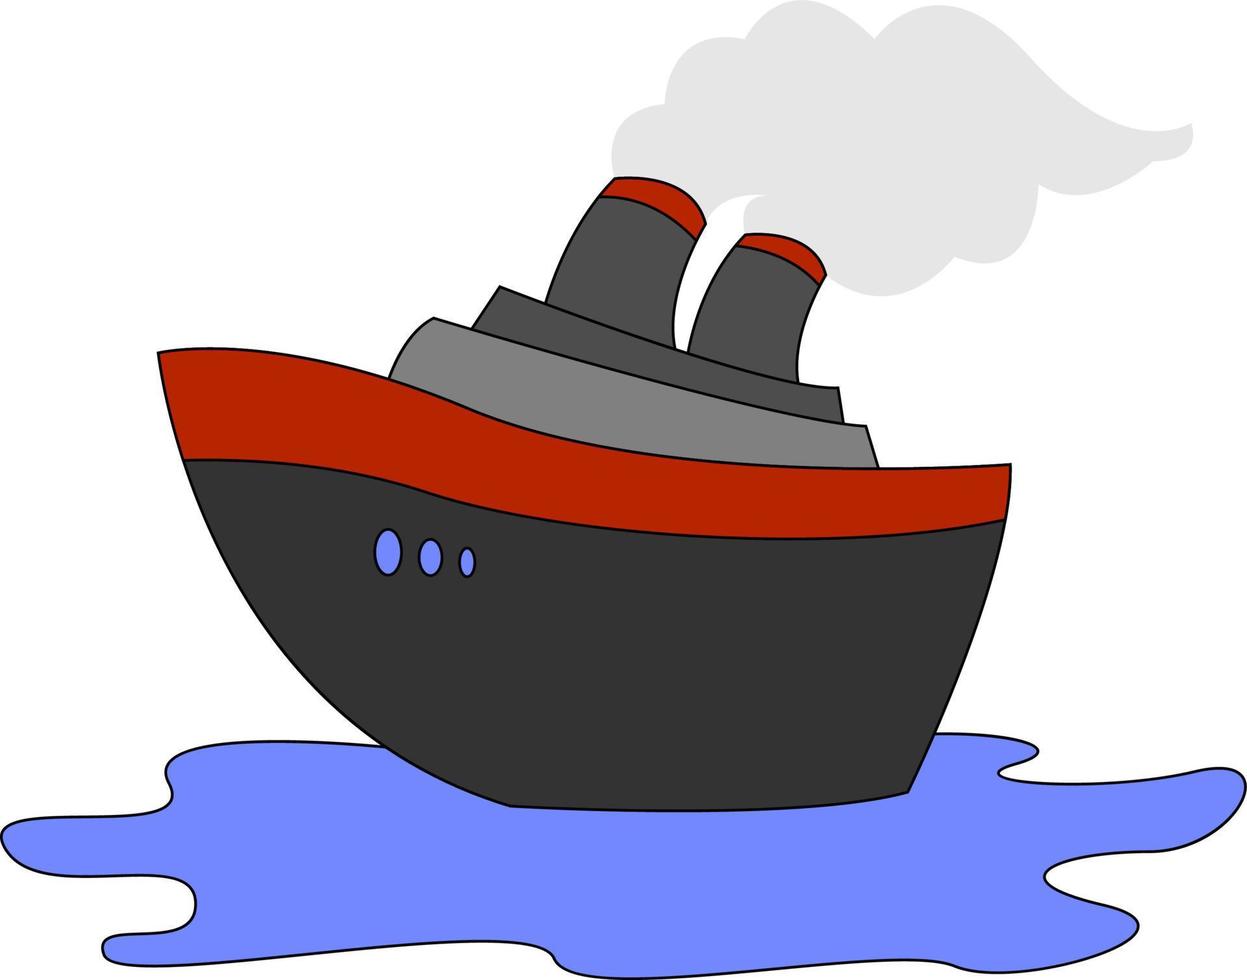 navio a vapor no mar, ilustração, vetor em fundo branco.